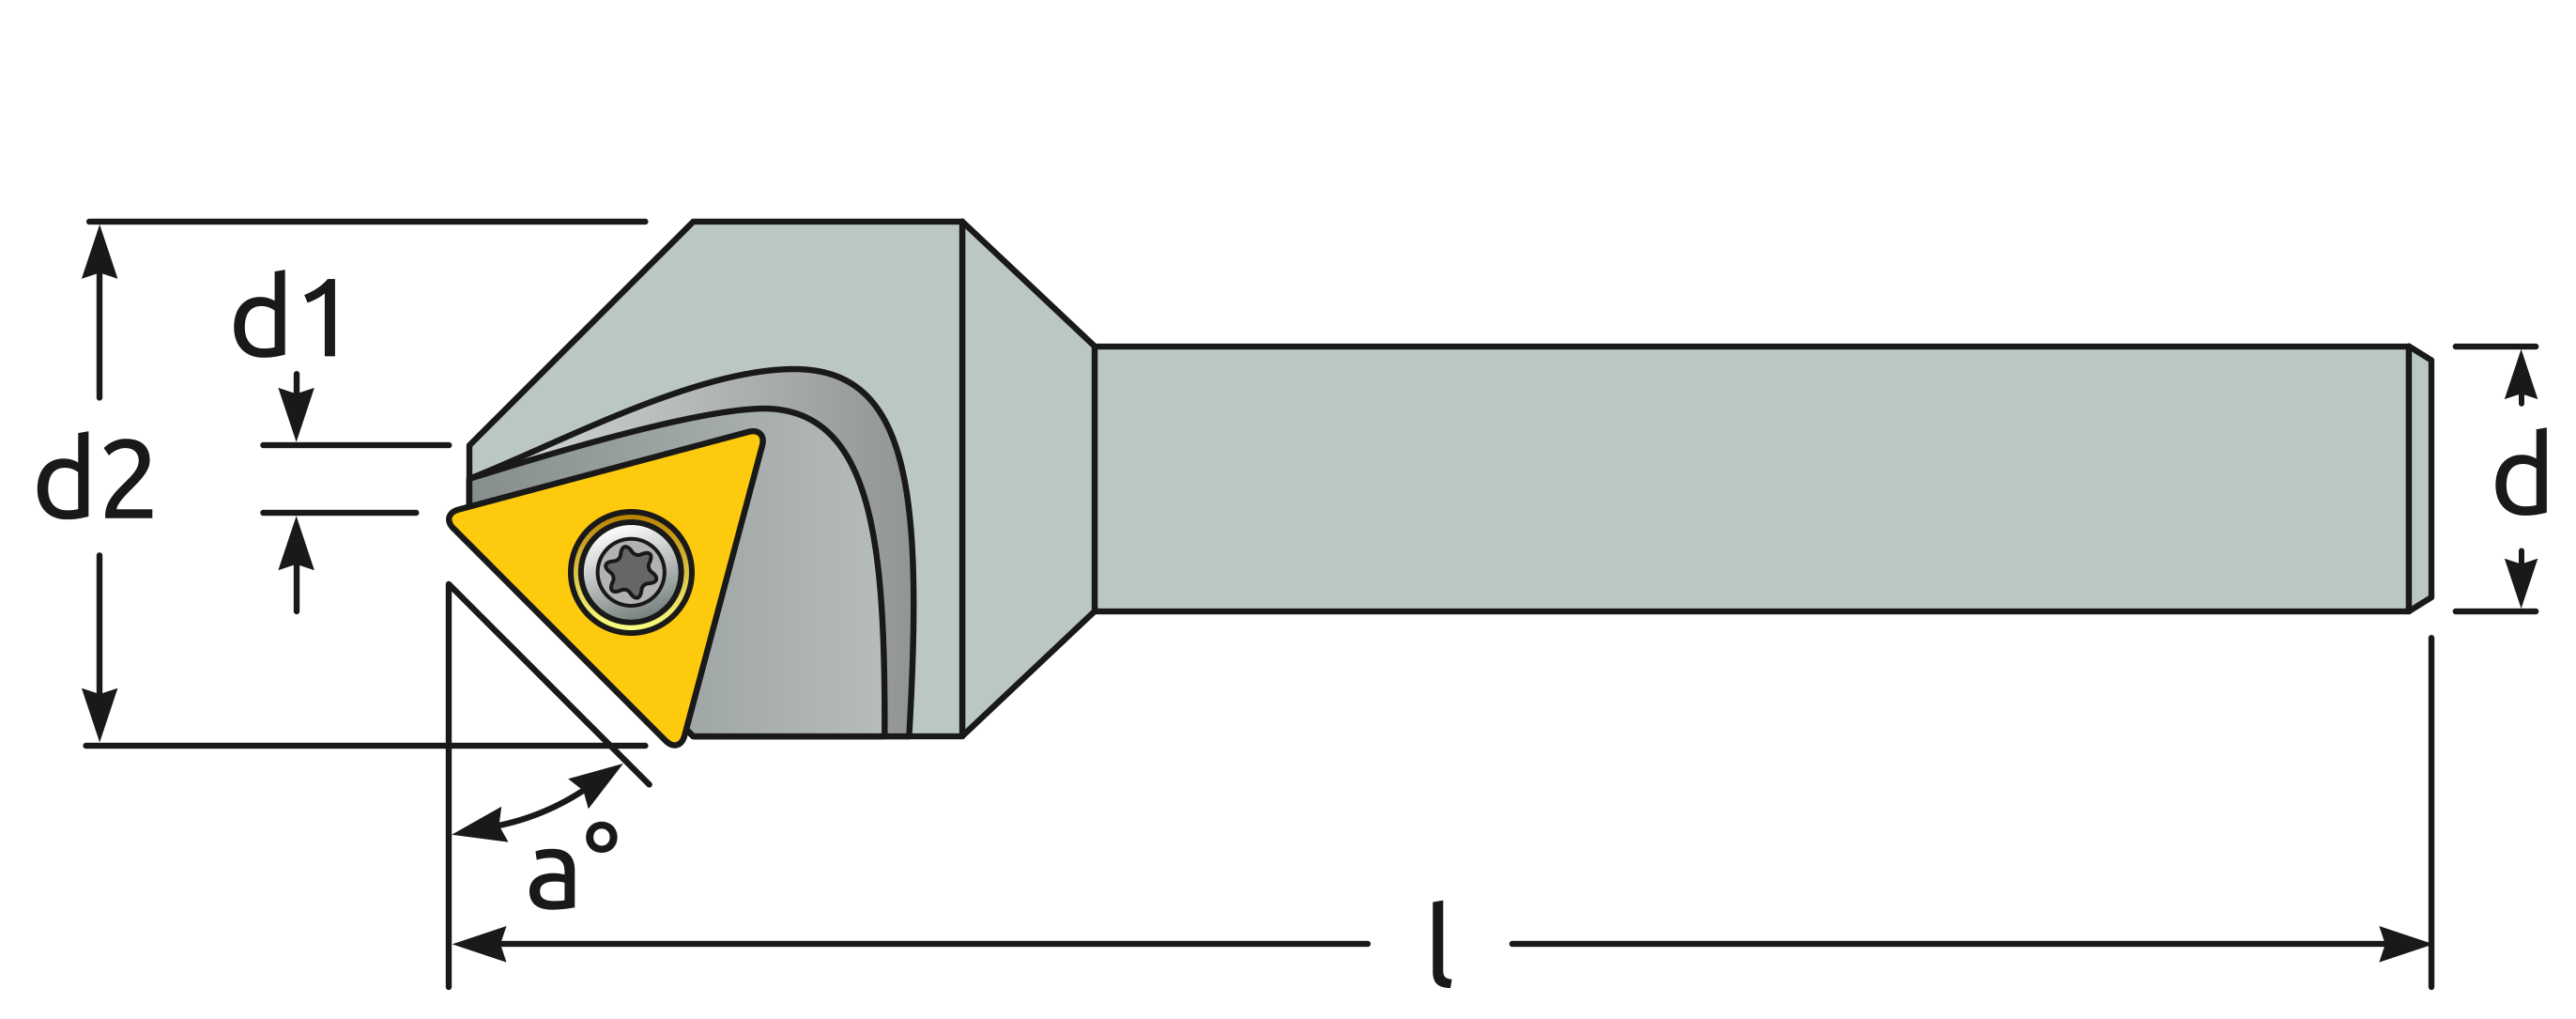 Dimensiones del Porta insertos TC12